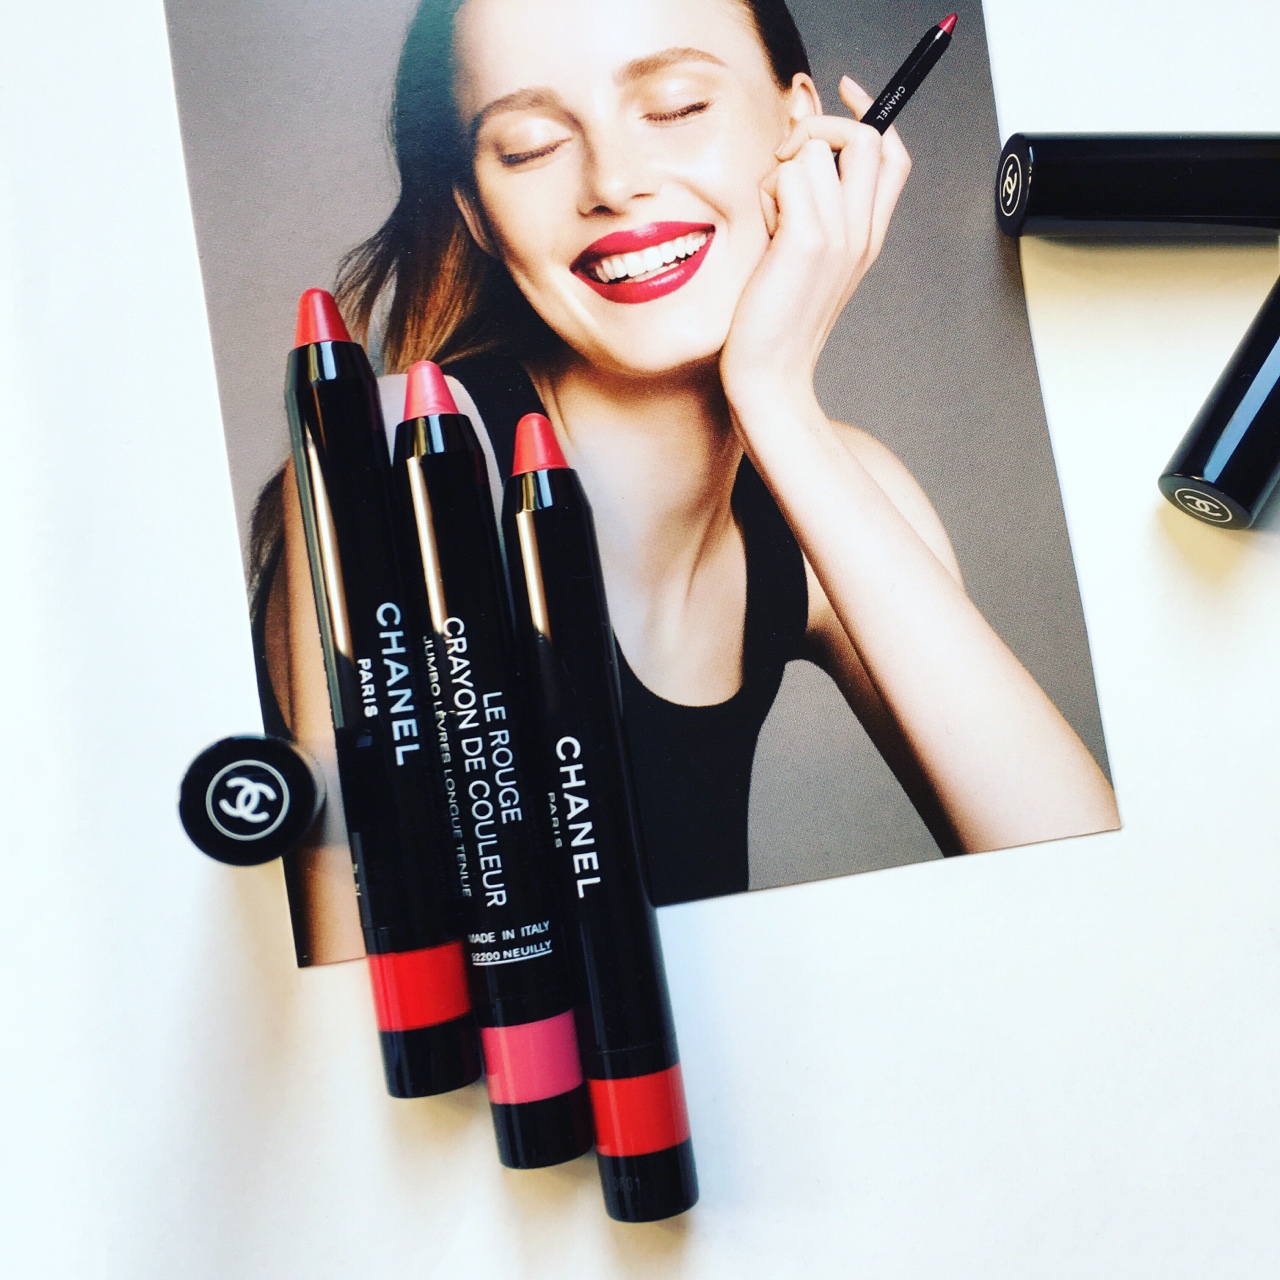 Chanel Framboise Le Rouge Crayon de Couleur Review & Swatches